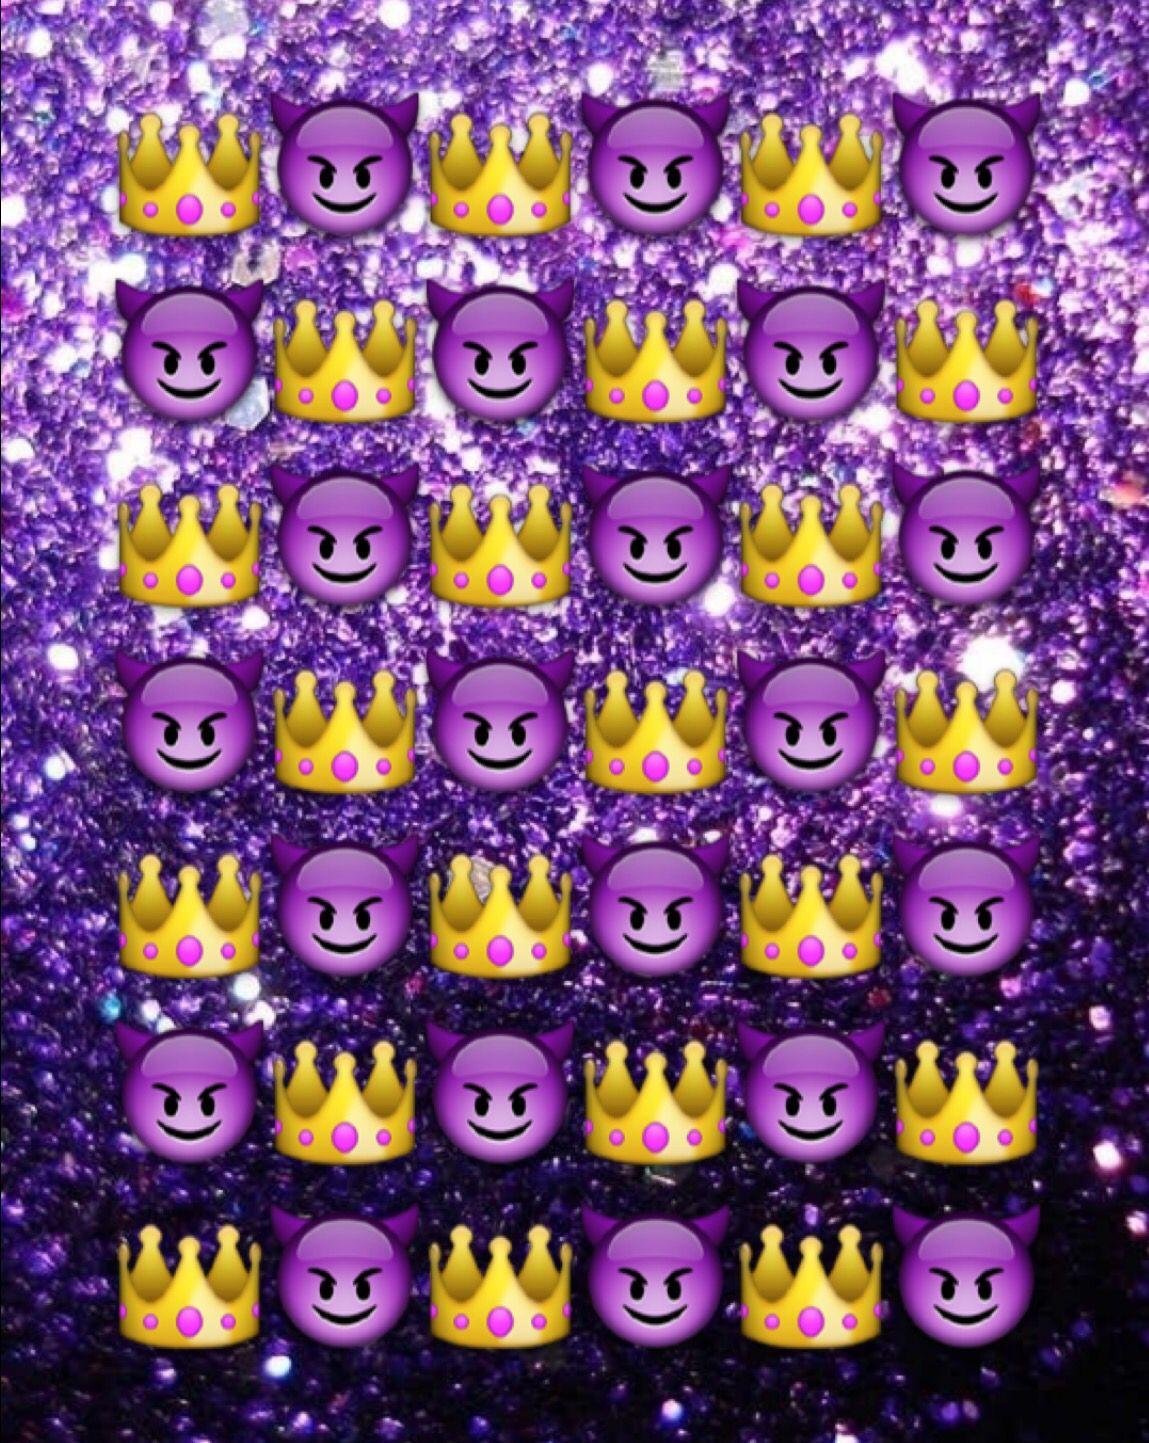 image about Emoji Wallpaper. Emoji wallpaper